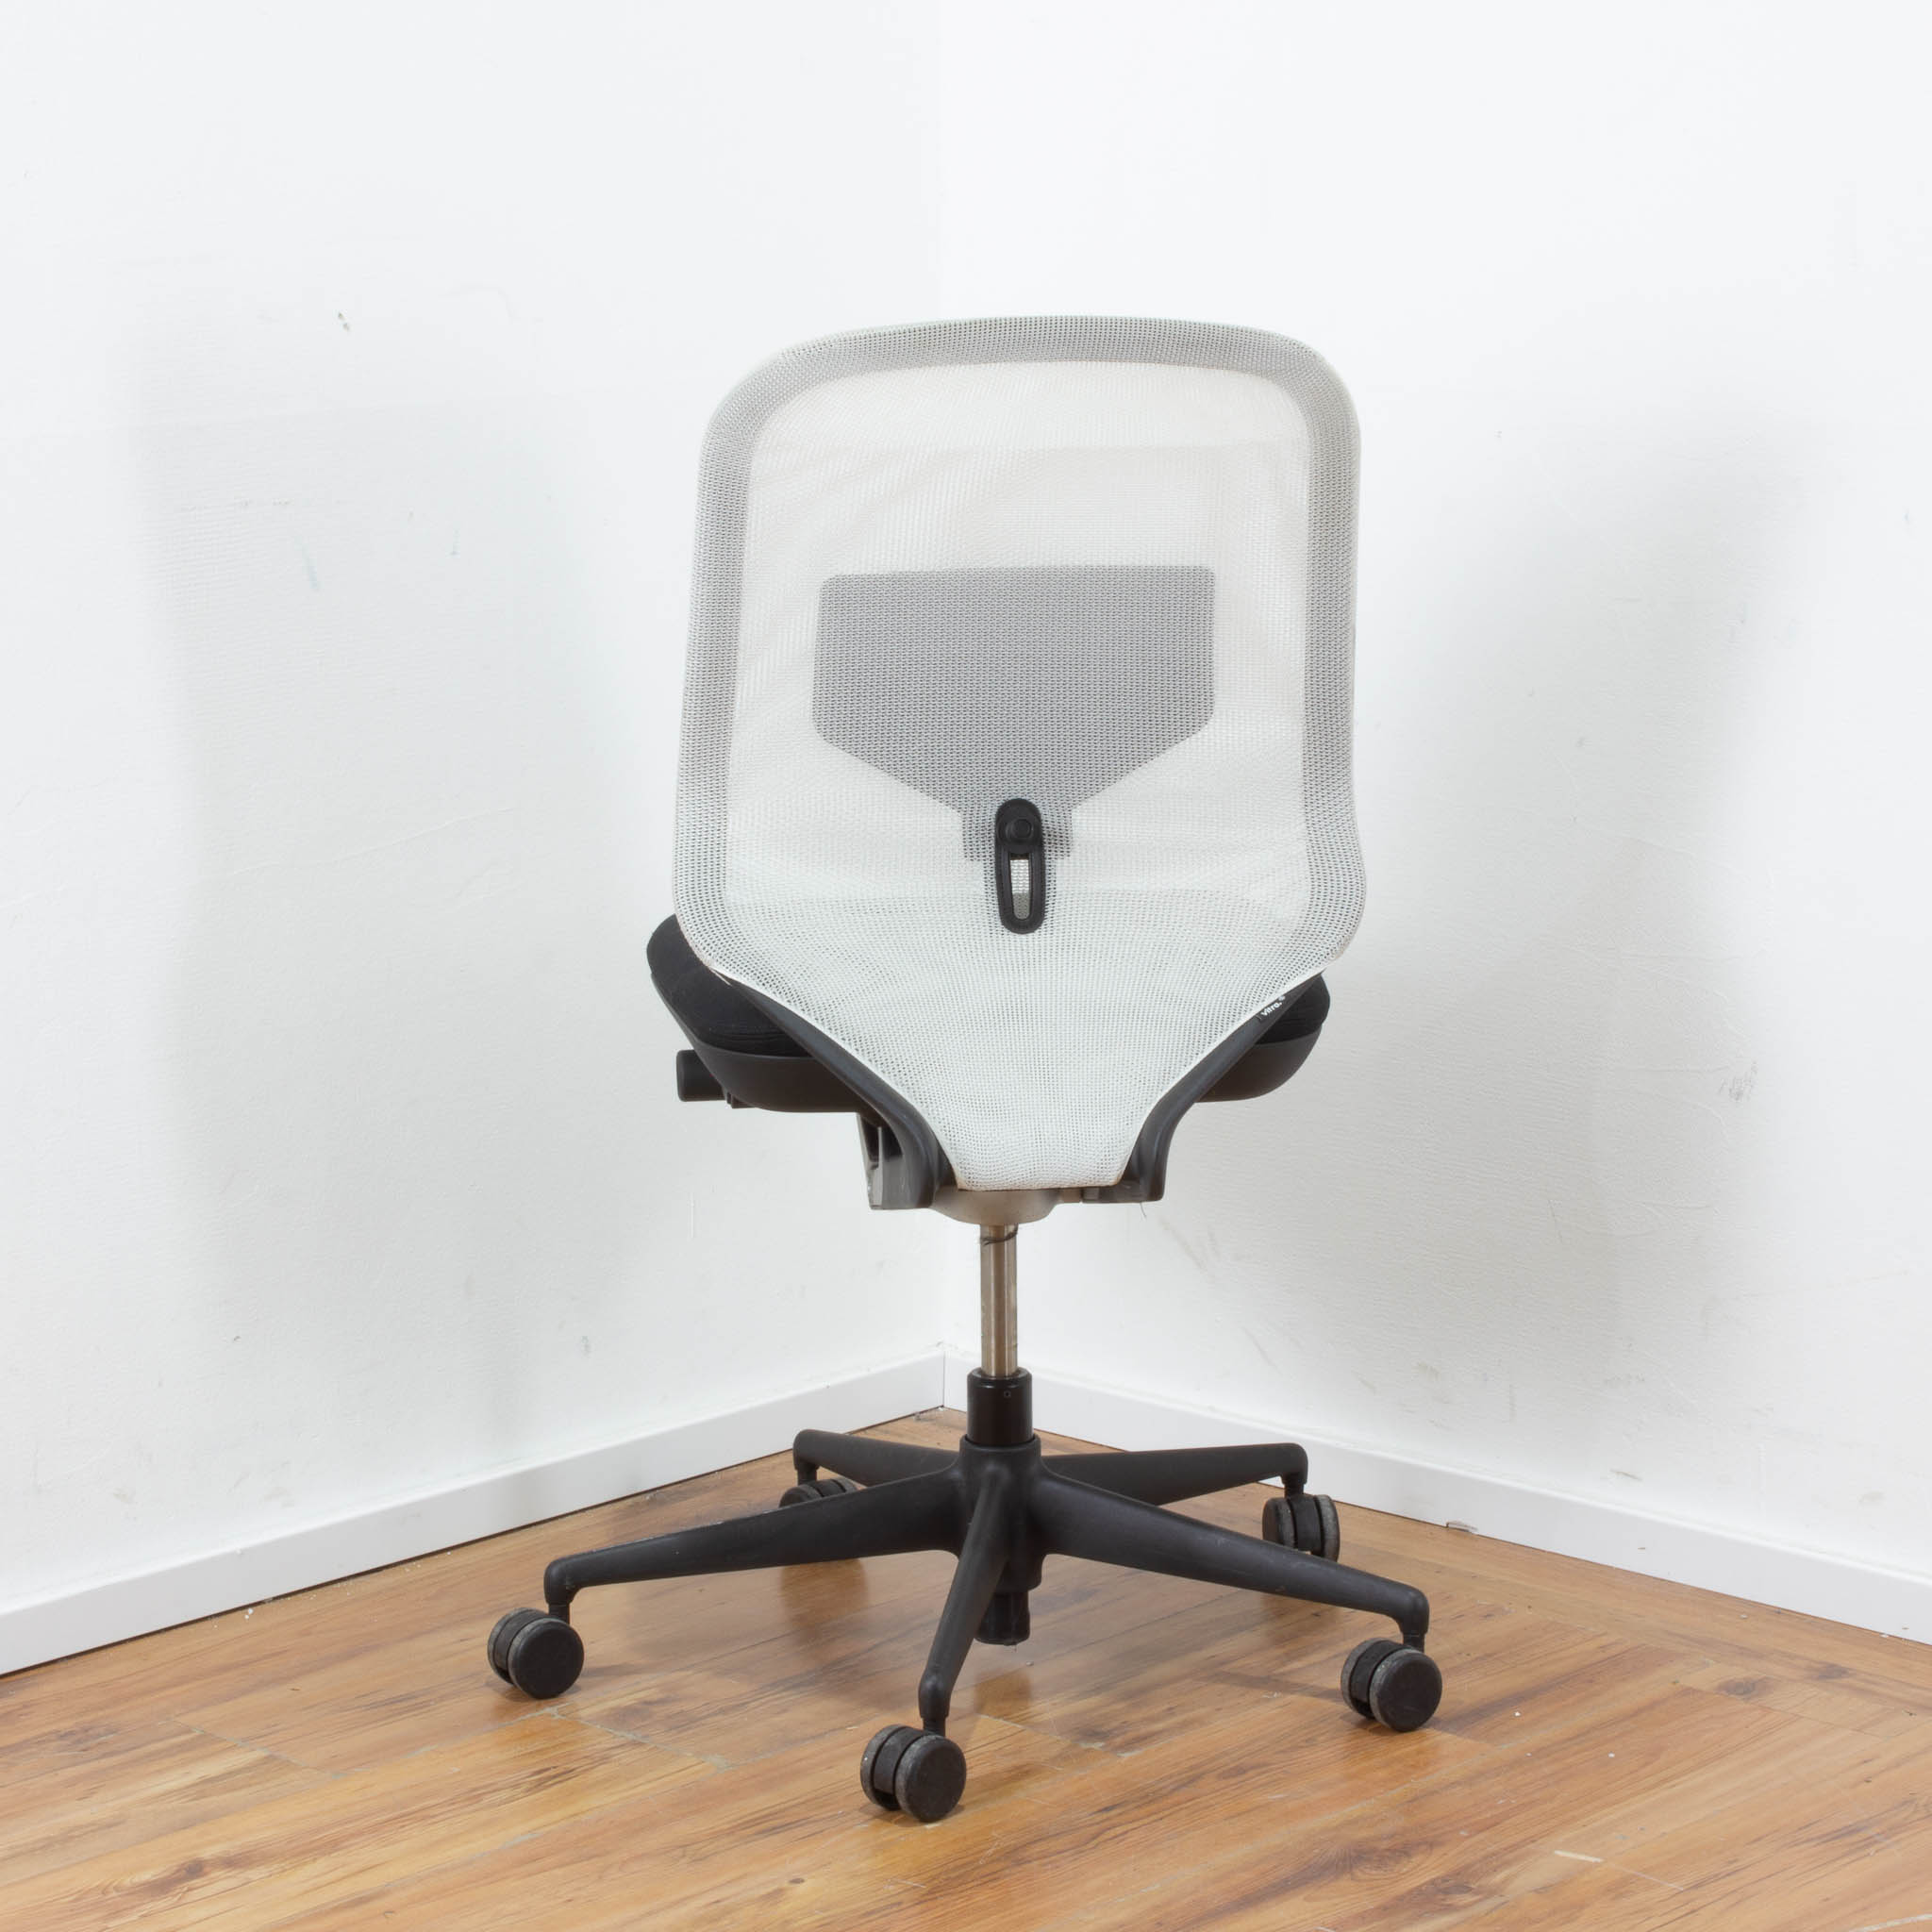 Vitra "MedaPal" Bürodrehstuhl Stoff schwarz mit weißer Netzrückenlehne 